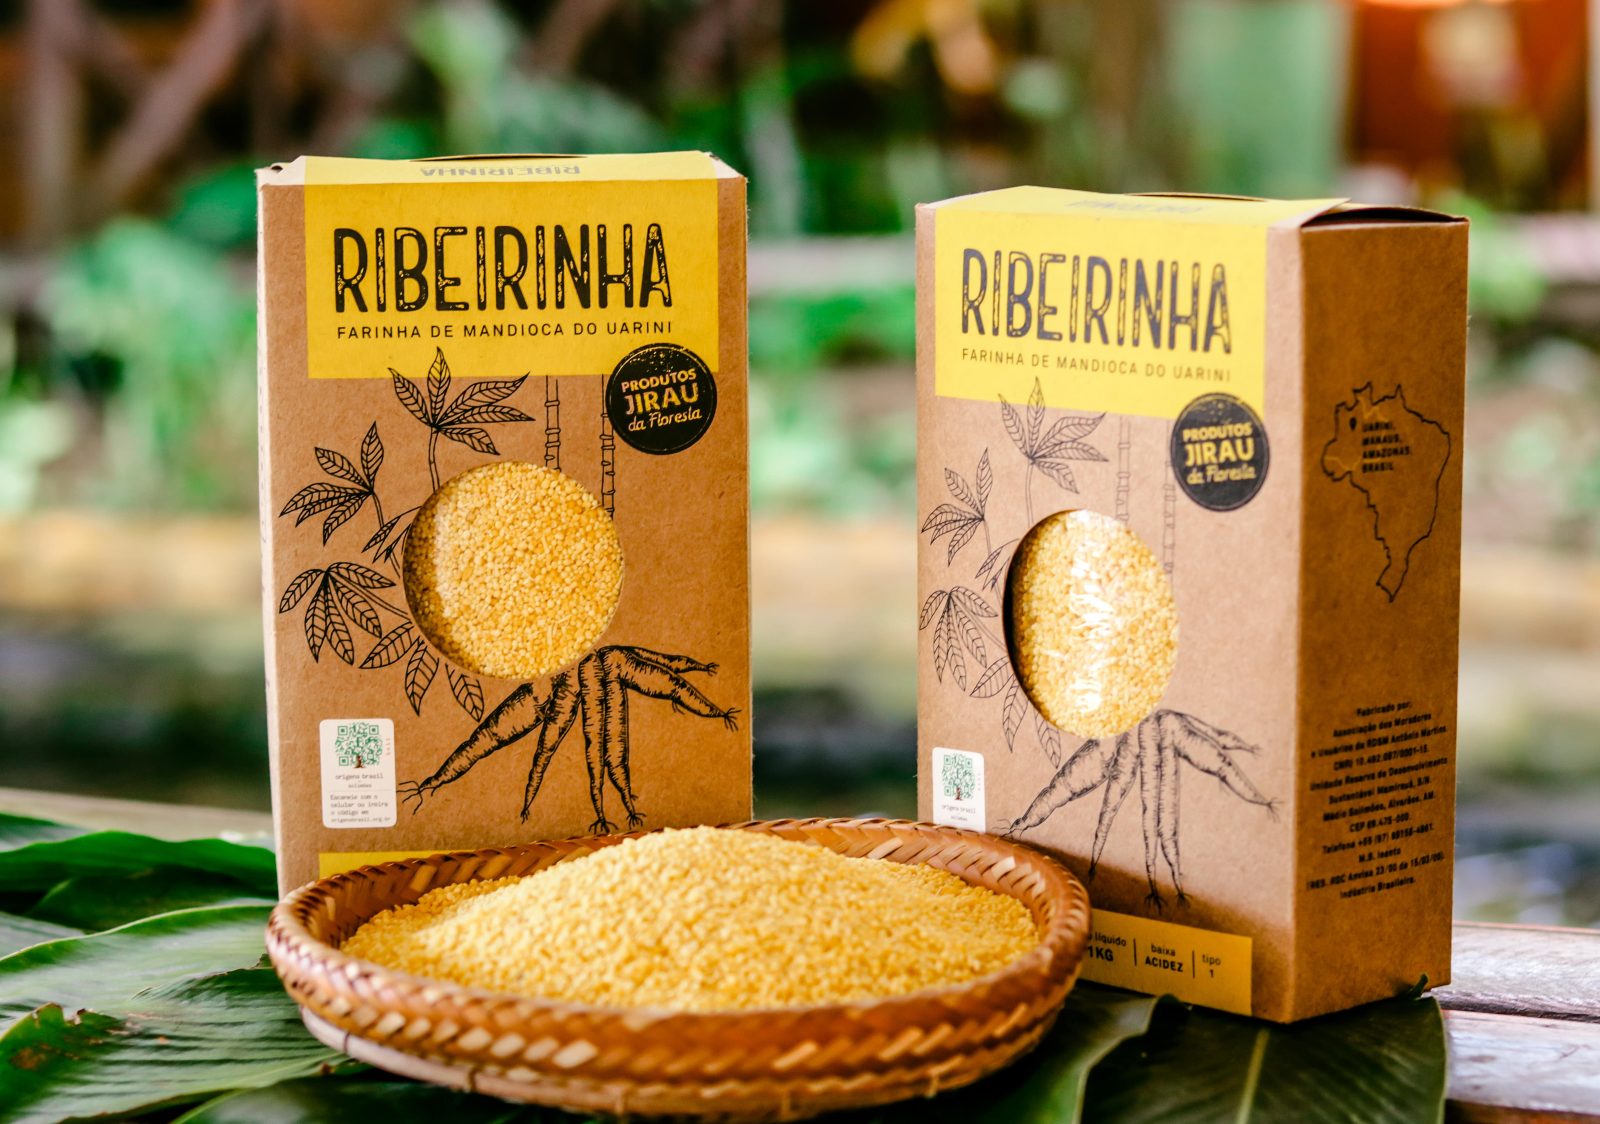 Embalagem da farinha ribeirinha, produzida no Uarini no interior do Amazonas, com apoio da Fundação Amazônia Sustentável (FAS).